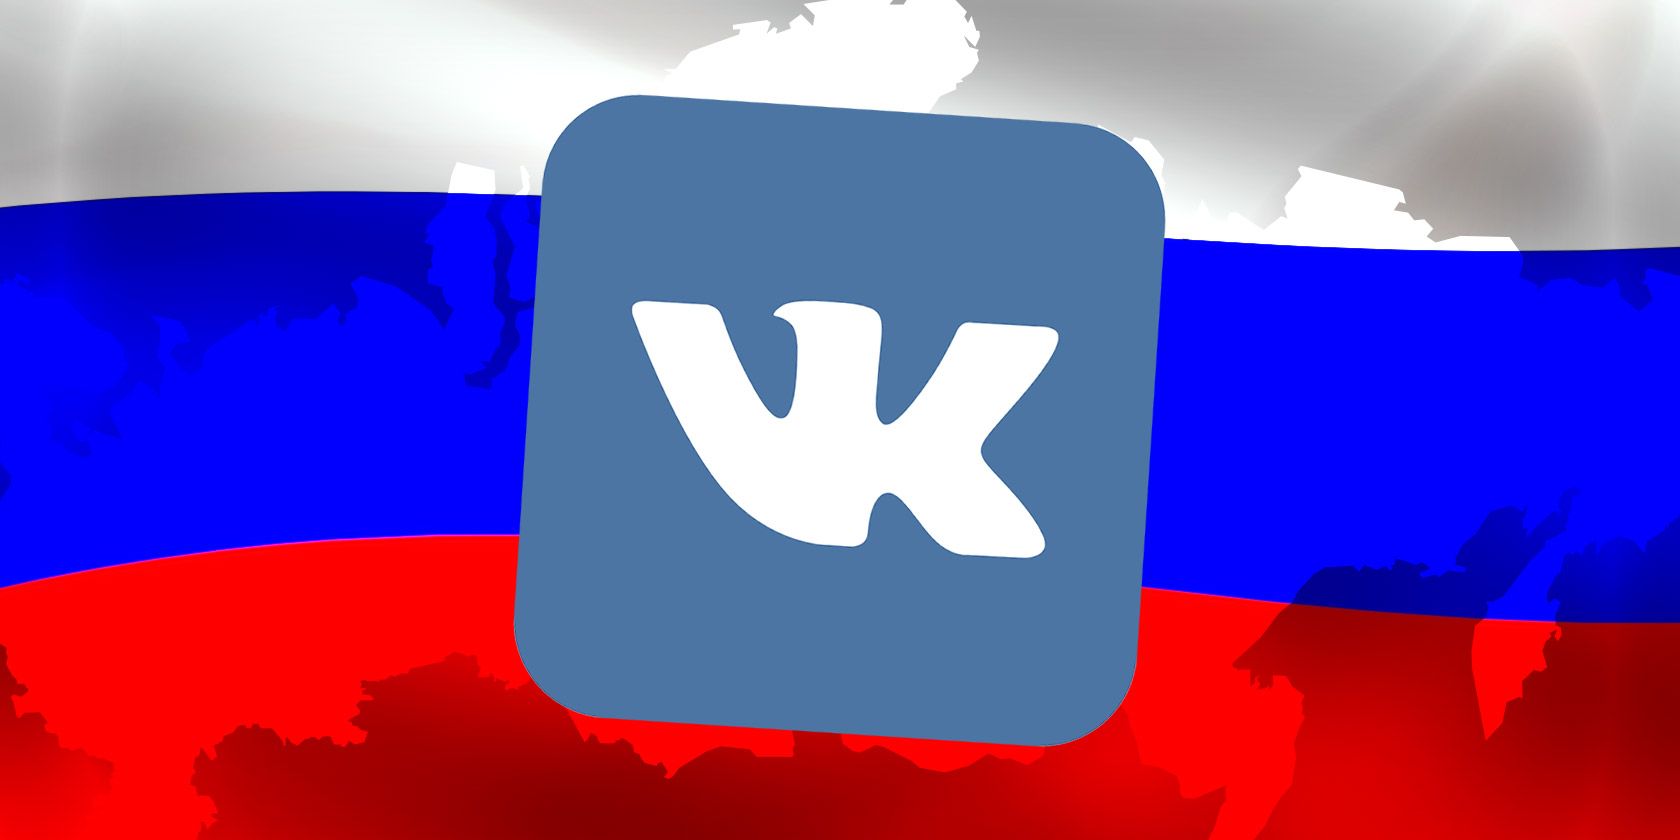 俄罗斯的社交媒体平台用户量比较大的是Vk